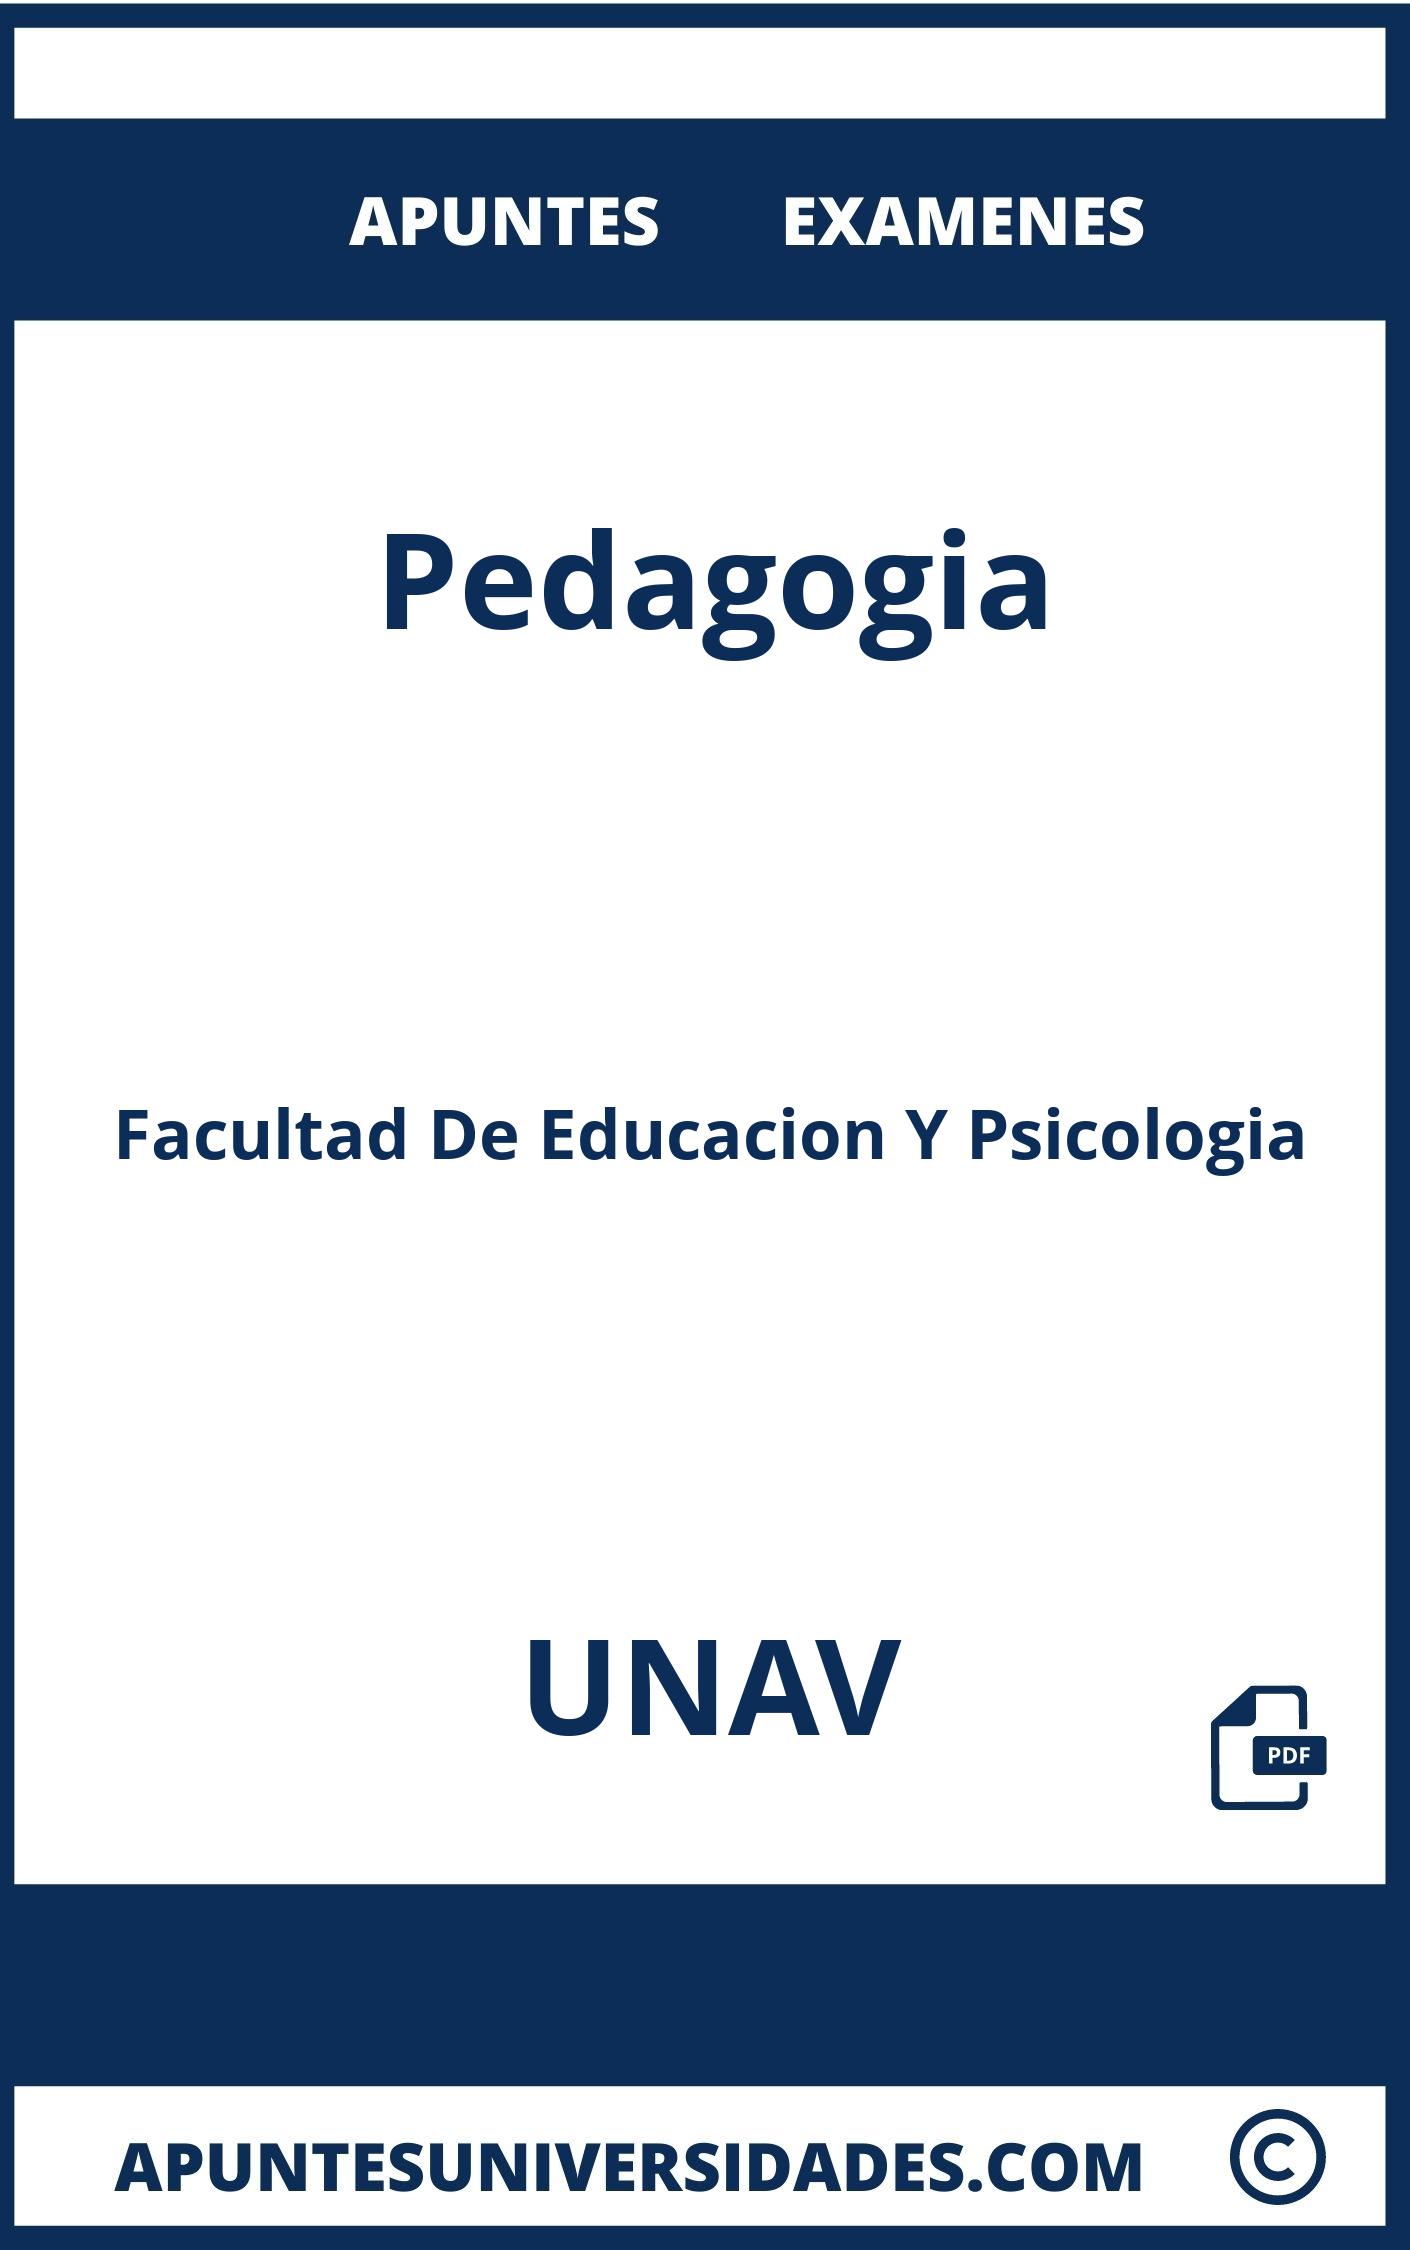 Examenes y Apuntes de Pedagogia UNAV